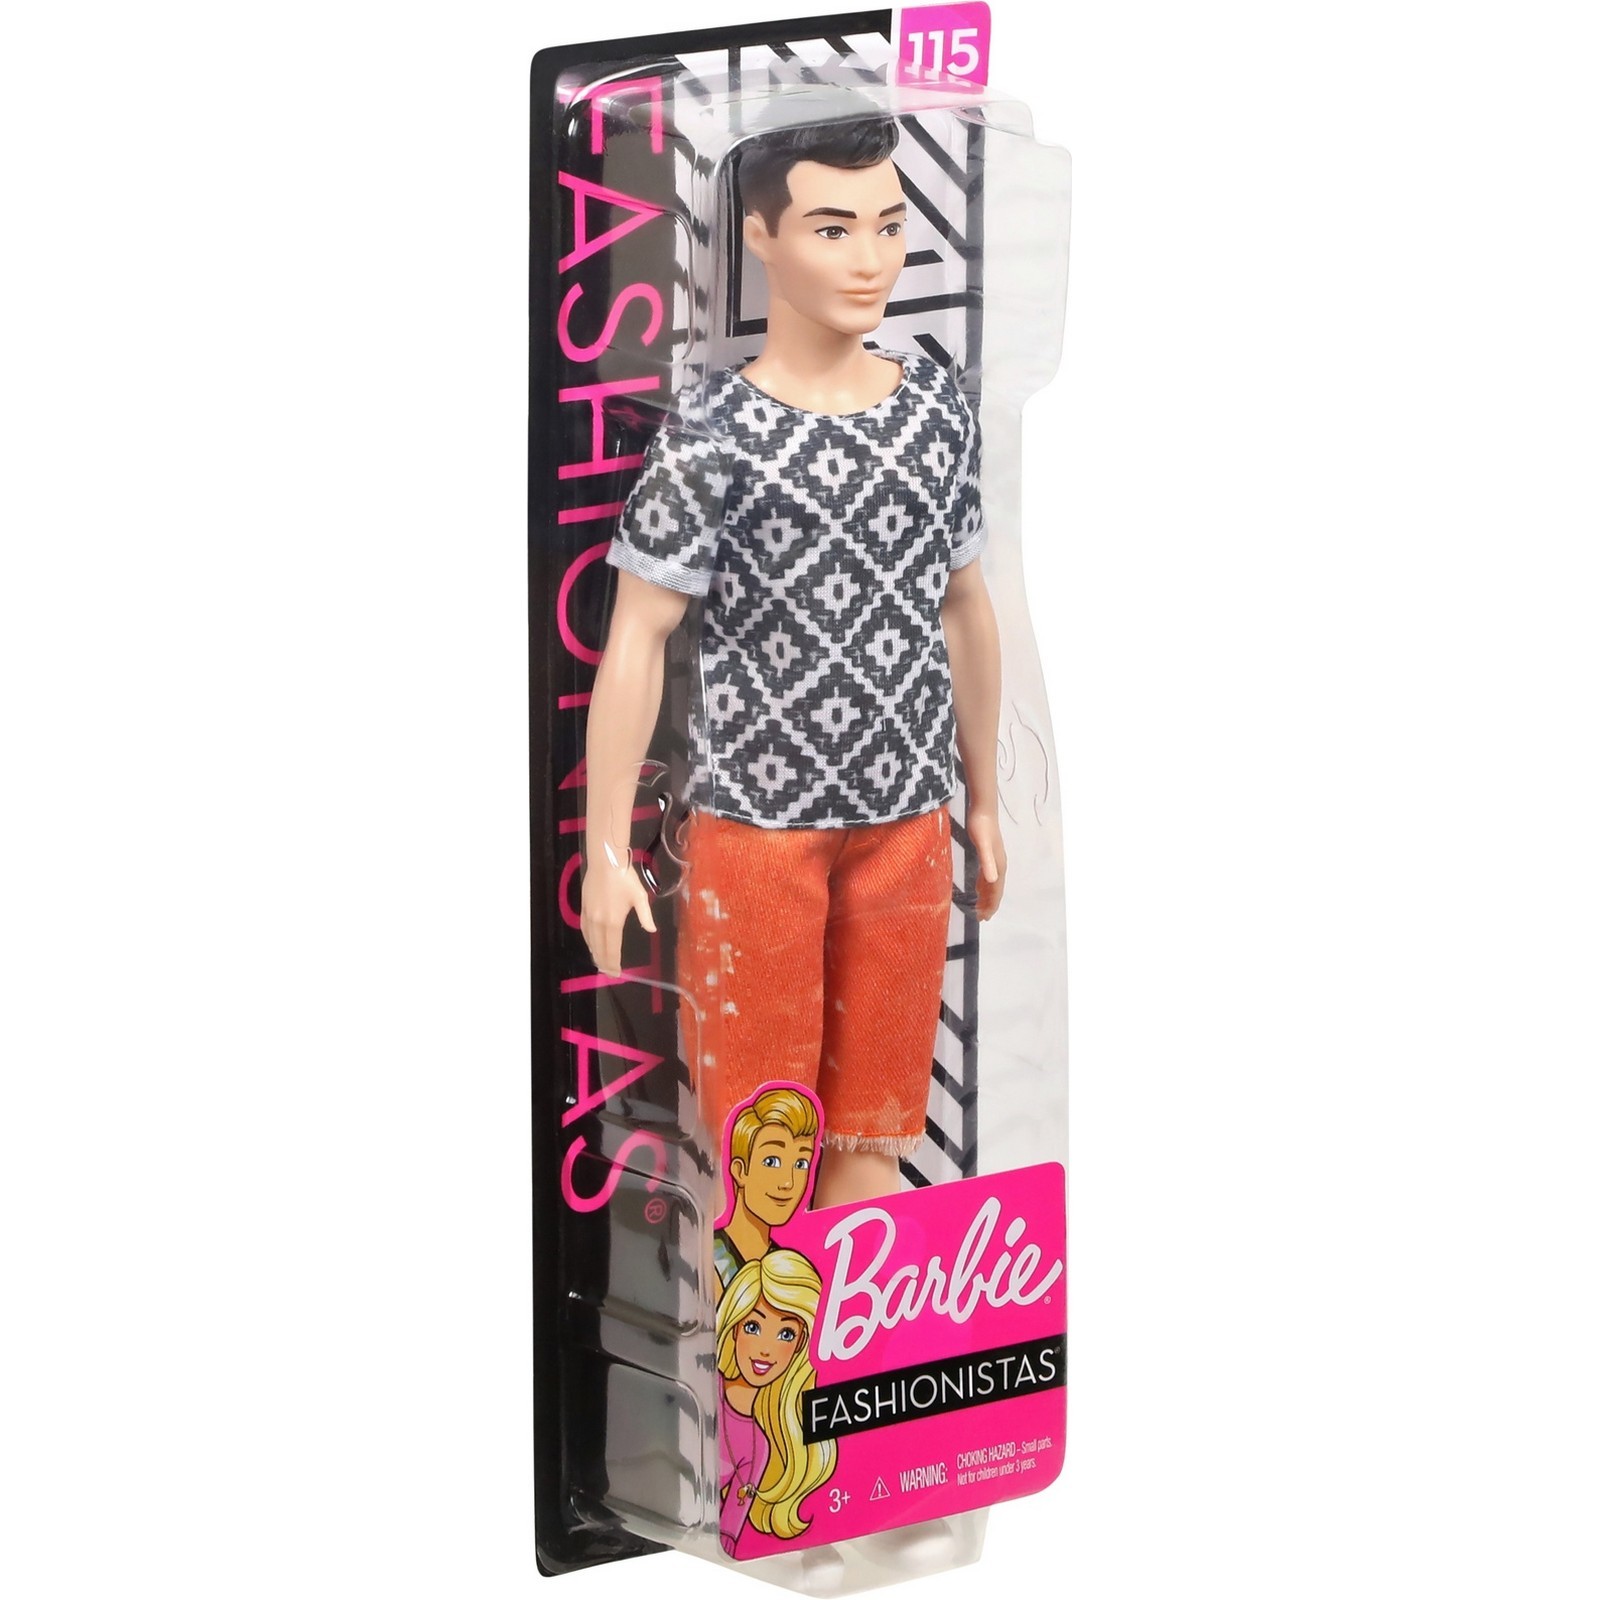 Кукла Barbie Игра с модой Кен 115 FXL62 DWK44 - фото 3